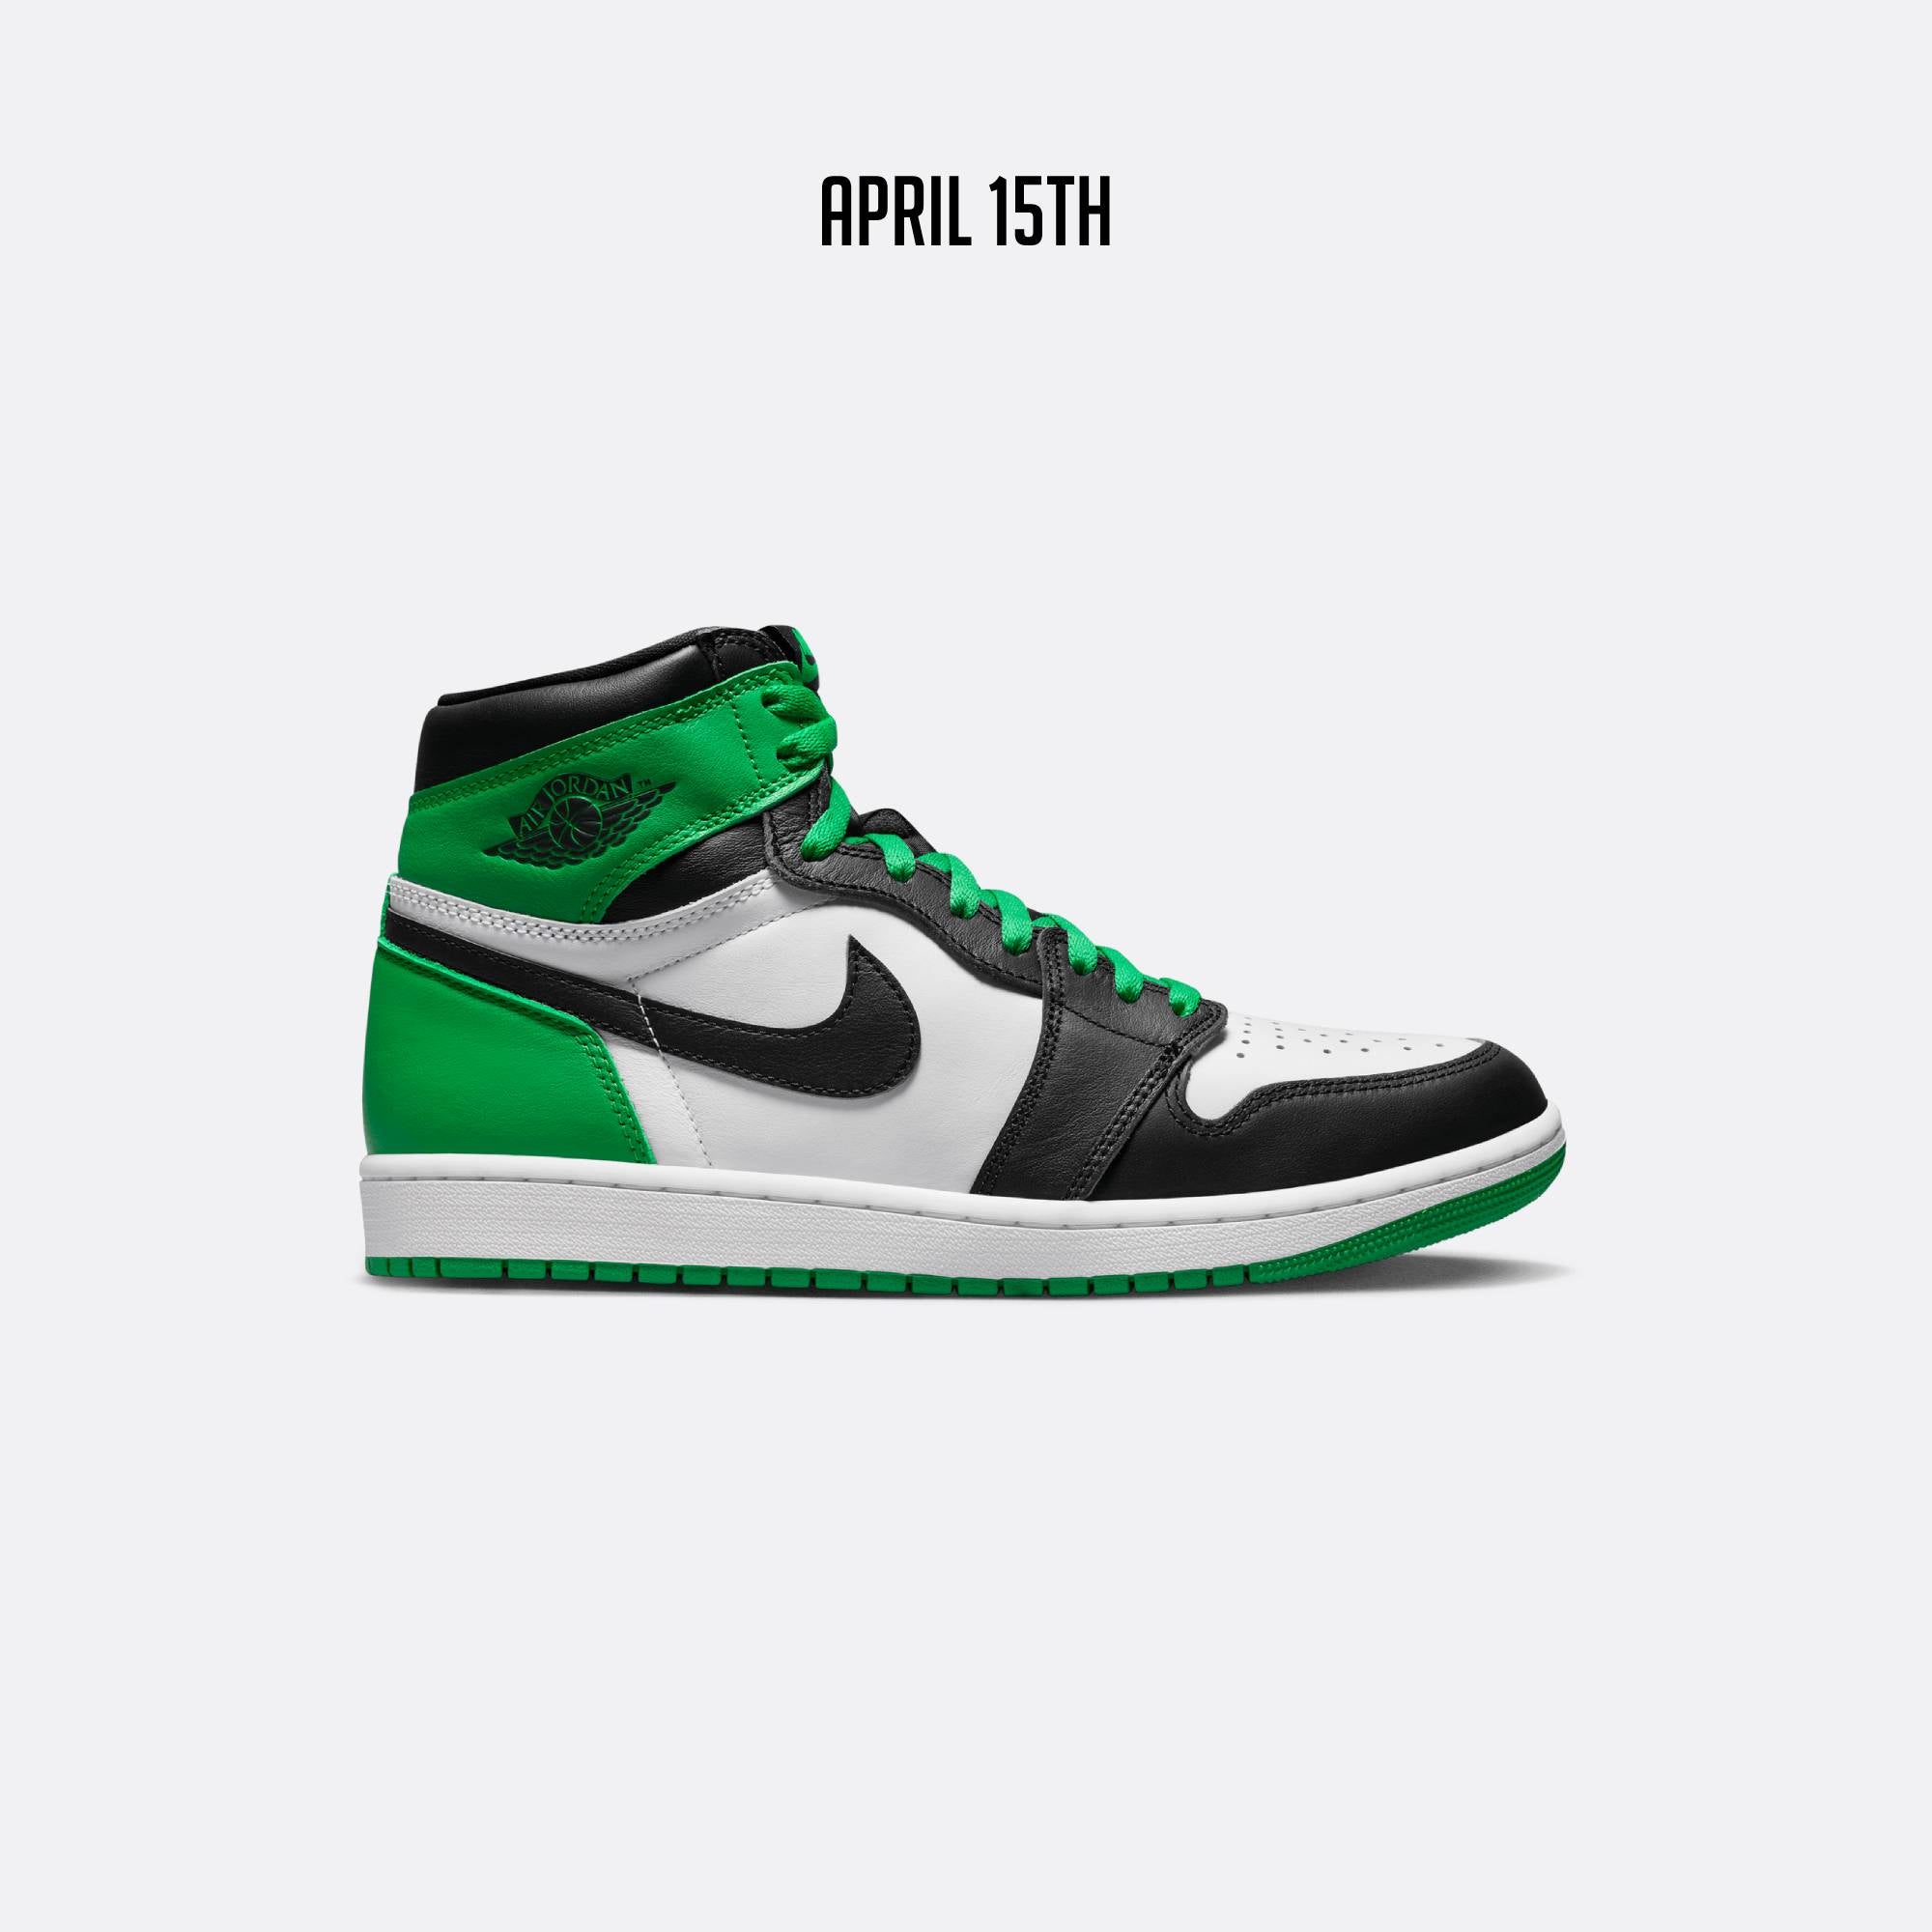 Air Jordan Retro 1 "Lucky Green" Release